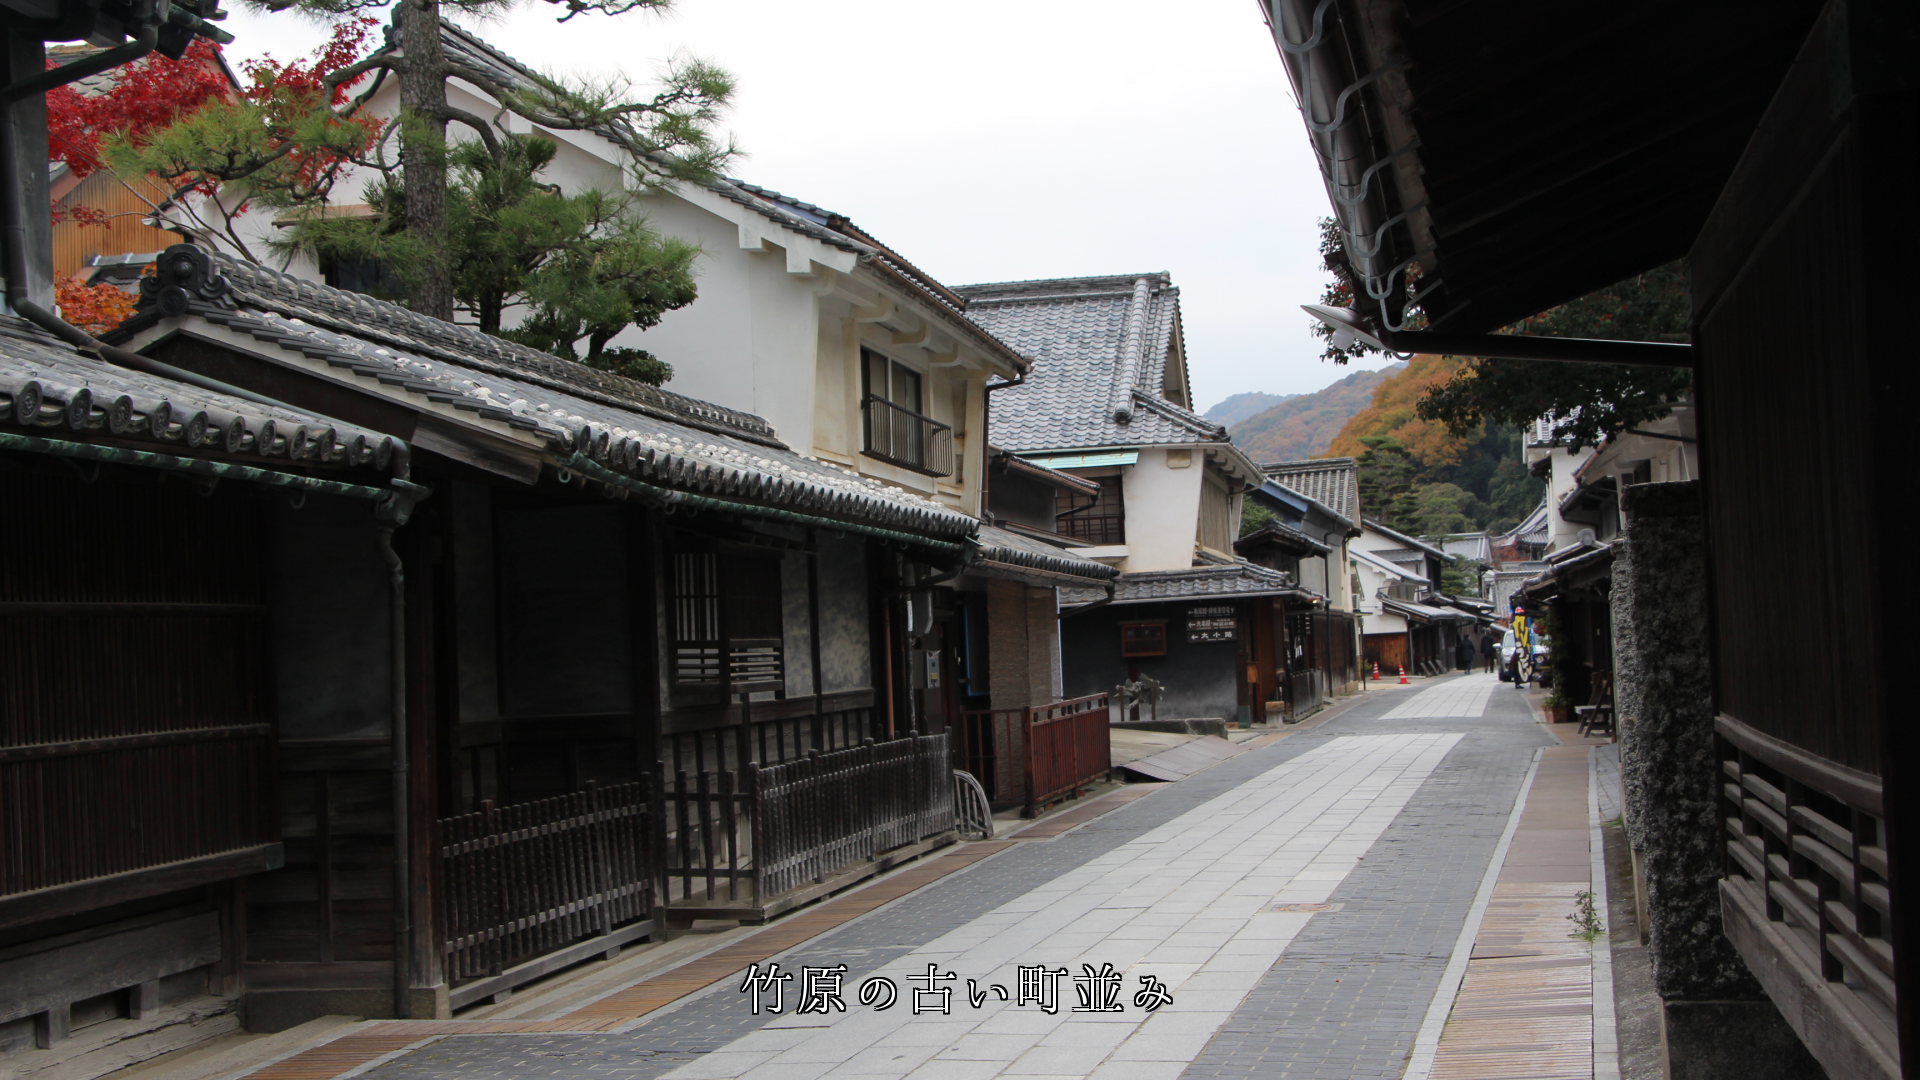 江戸時代の雰囲気を残した　商家の街並み  そのままの姿で居てほしい